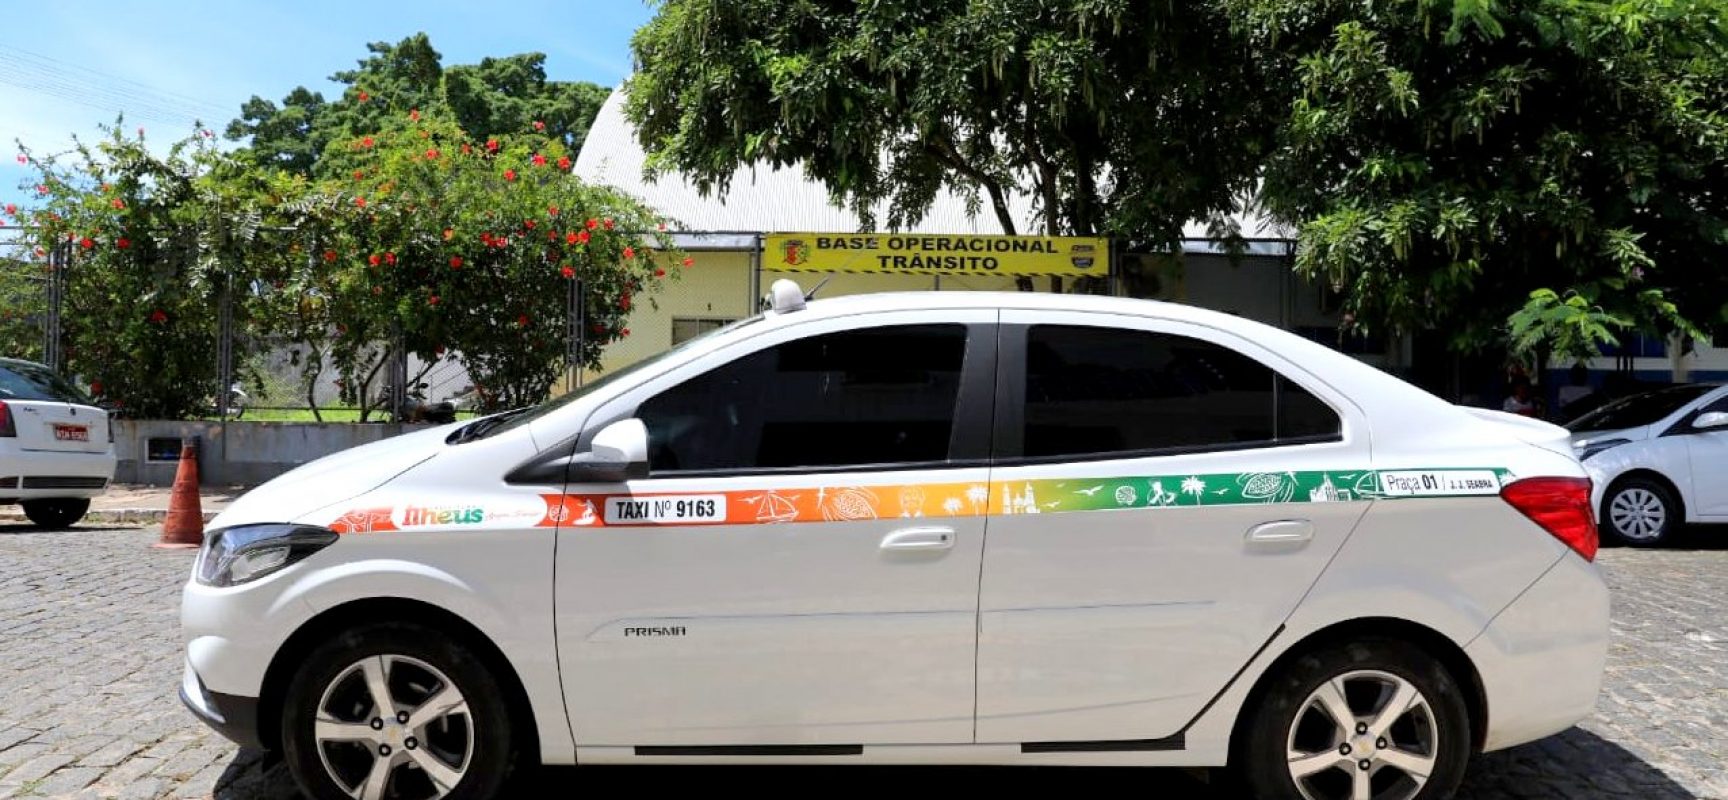 Táxis de Ilhéus ganham nova identidade visual na realização de vistoria